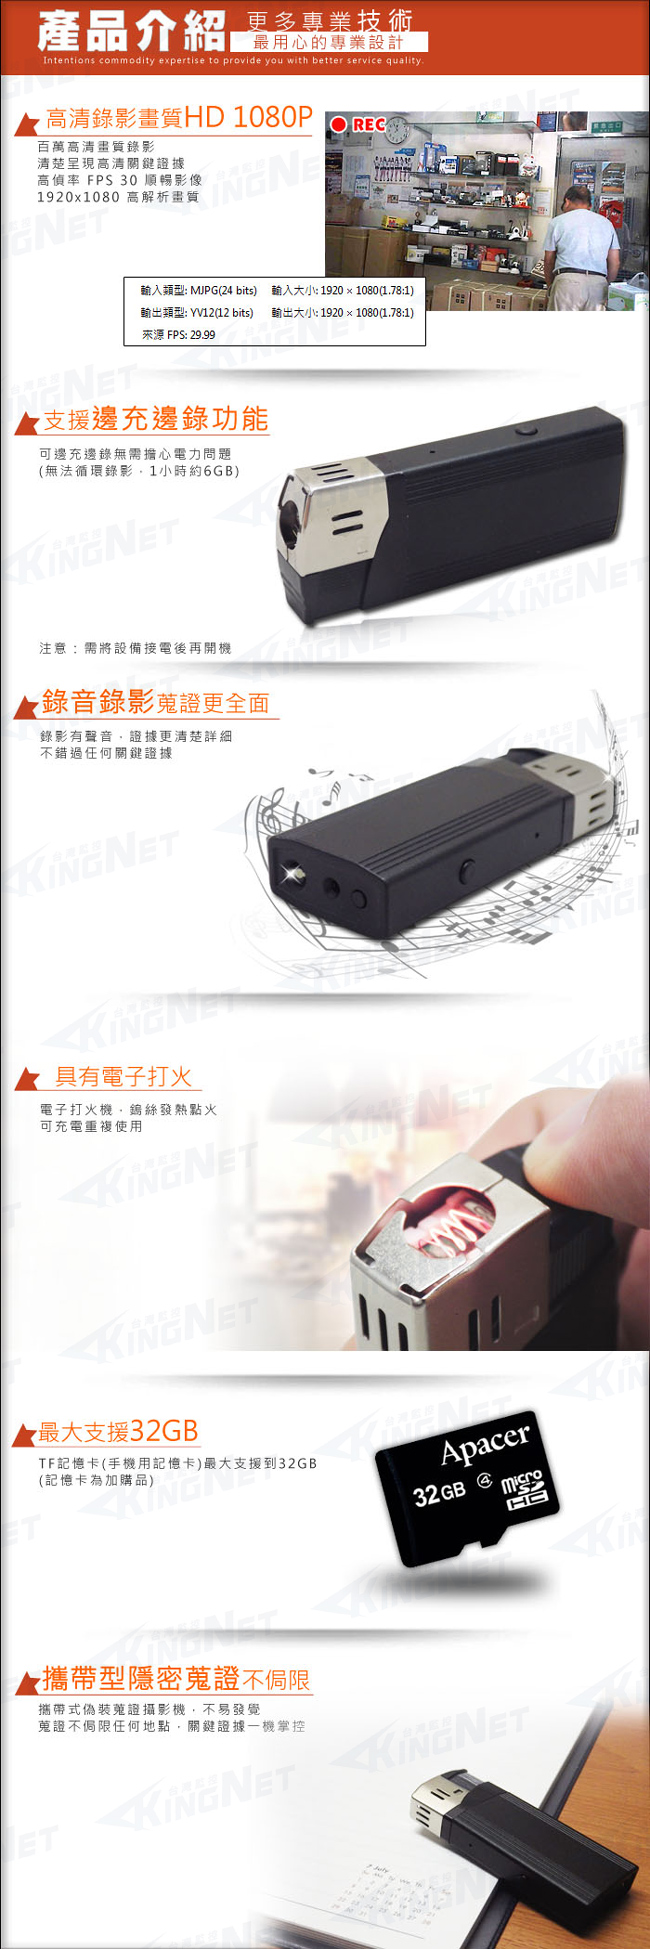 監視器攝影機 KINGNET HD 1080P 微型針孔攝影機密錄器 偽裝打火機造型 影音儲存 循環錄影